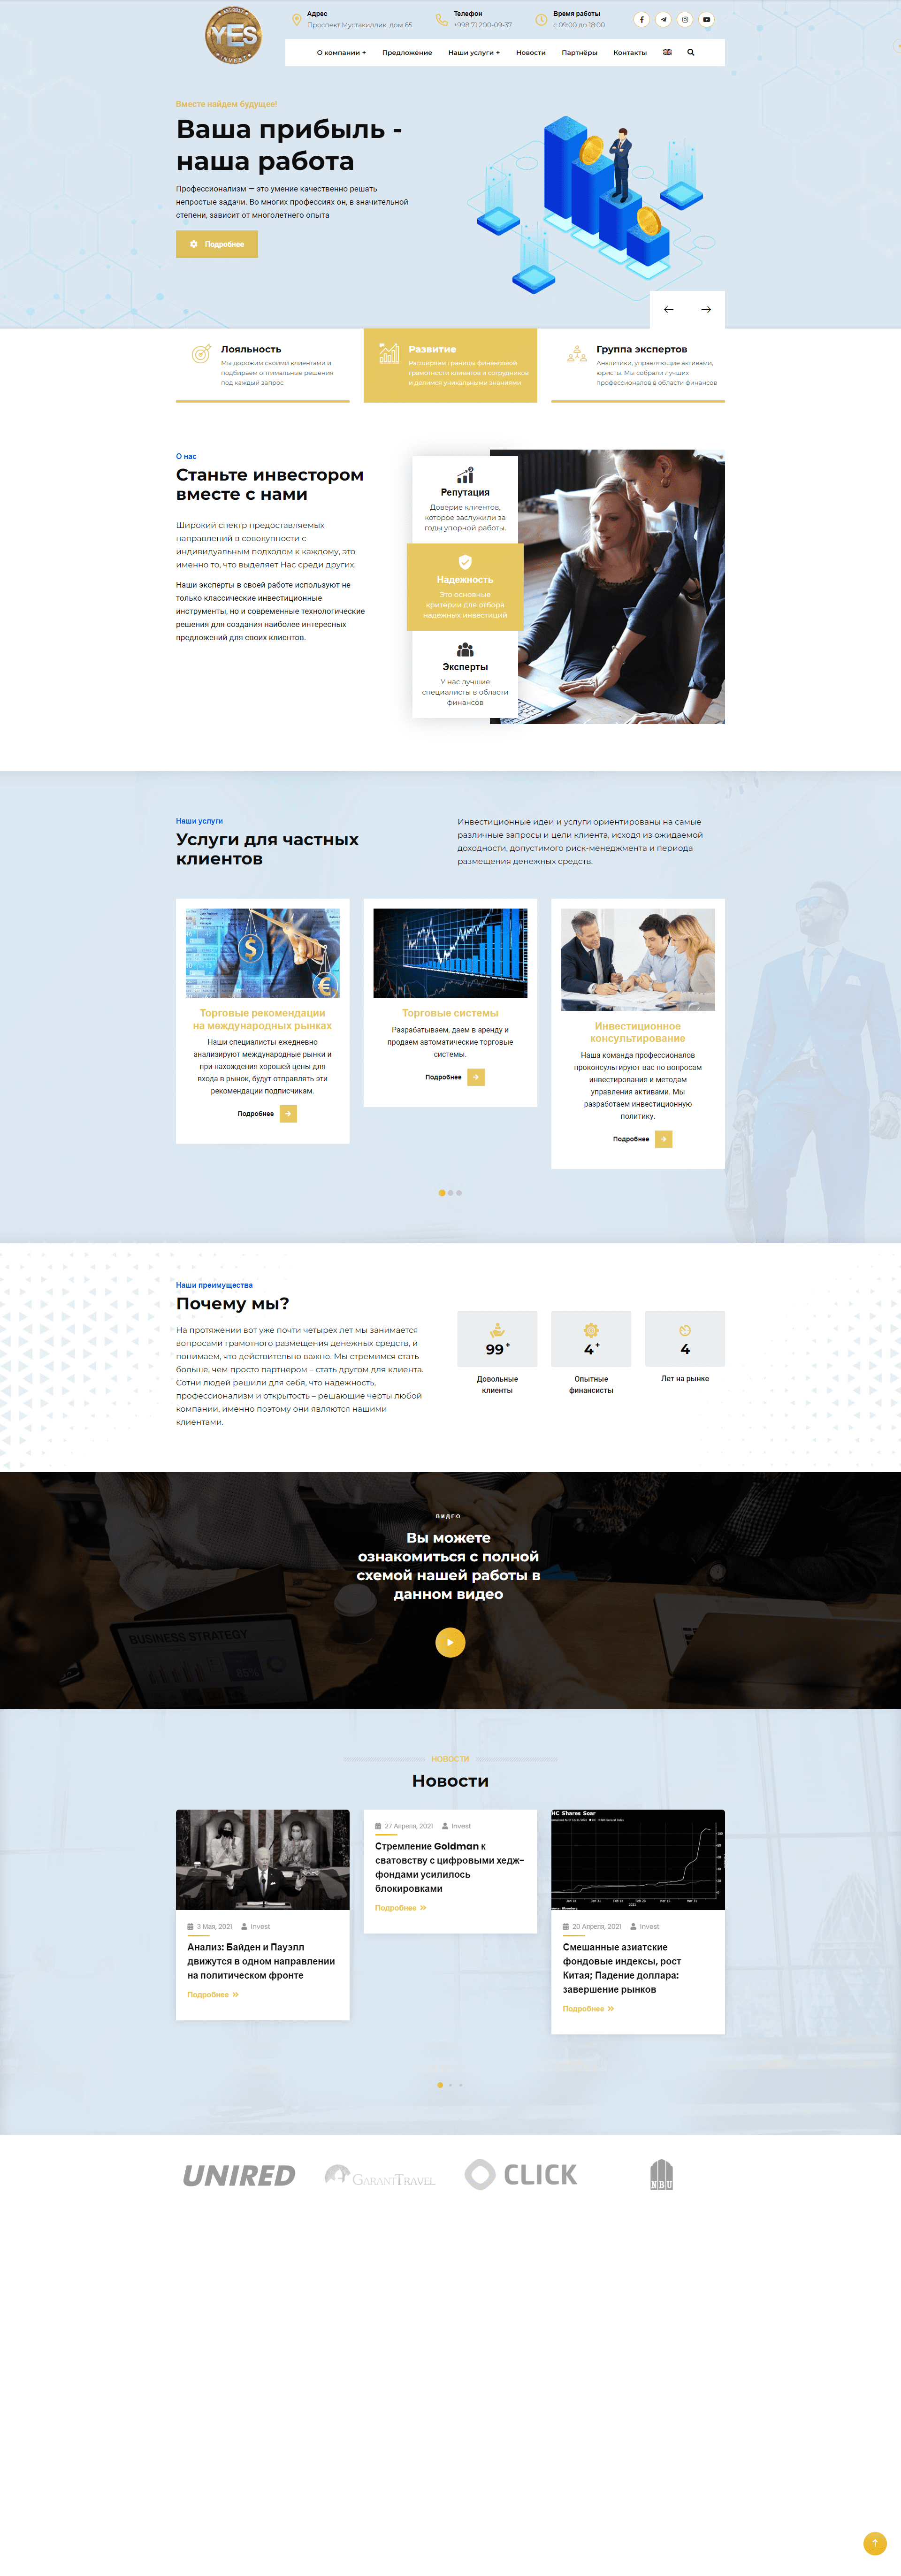 Разработка корпоративного сайта